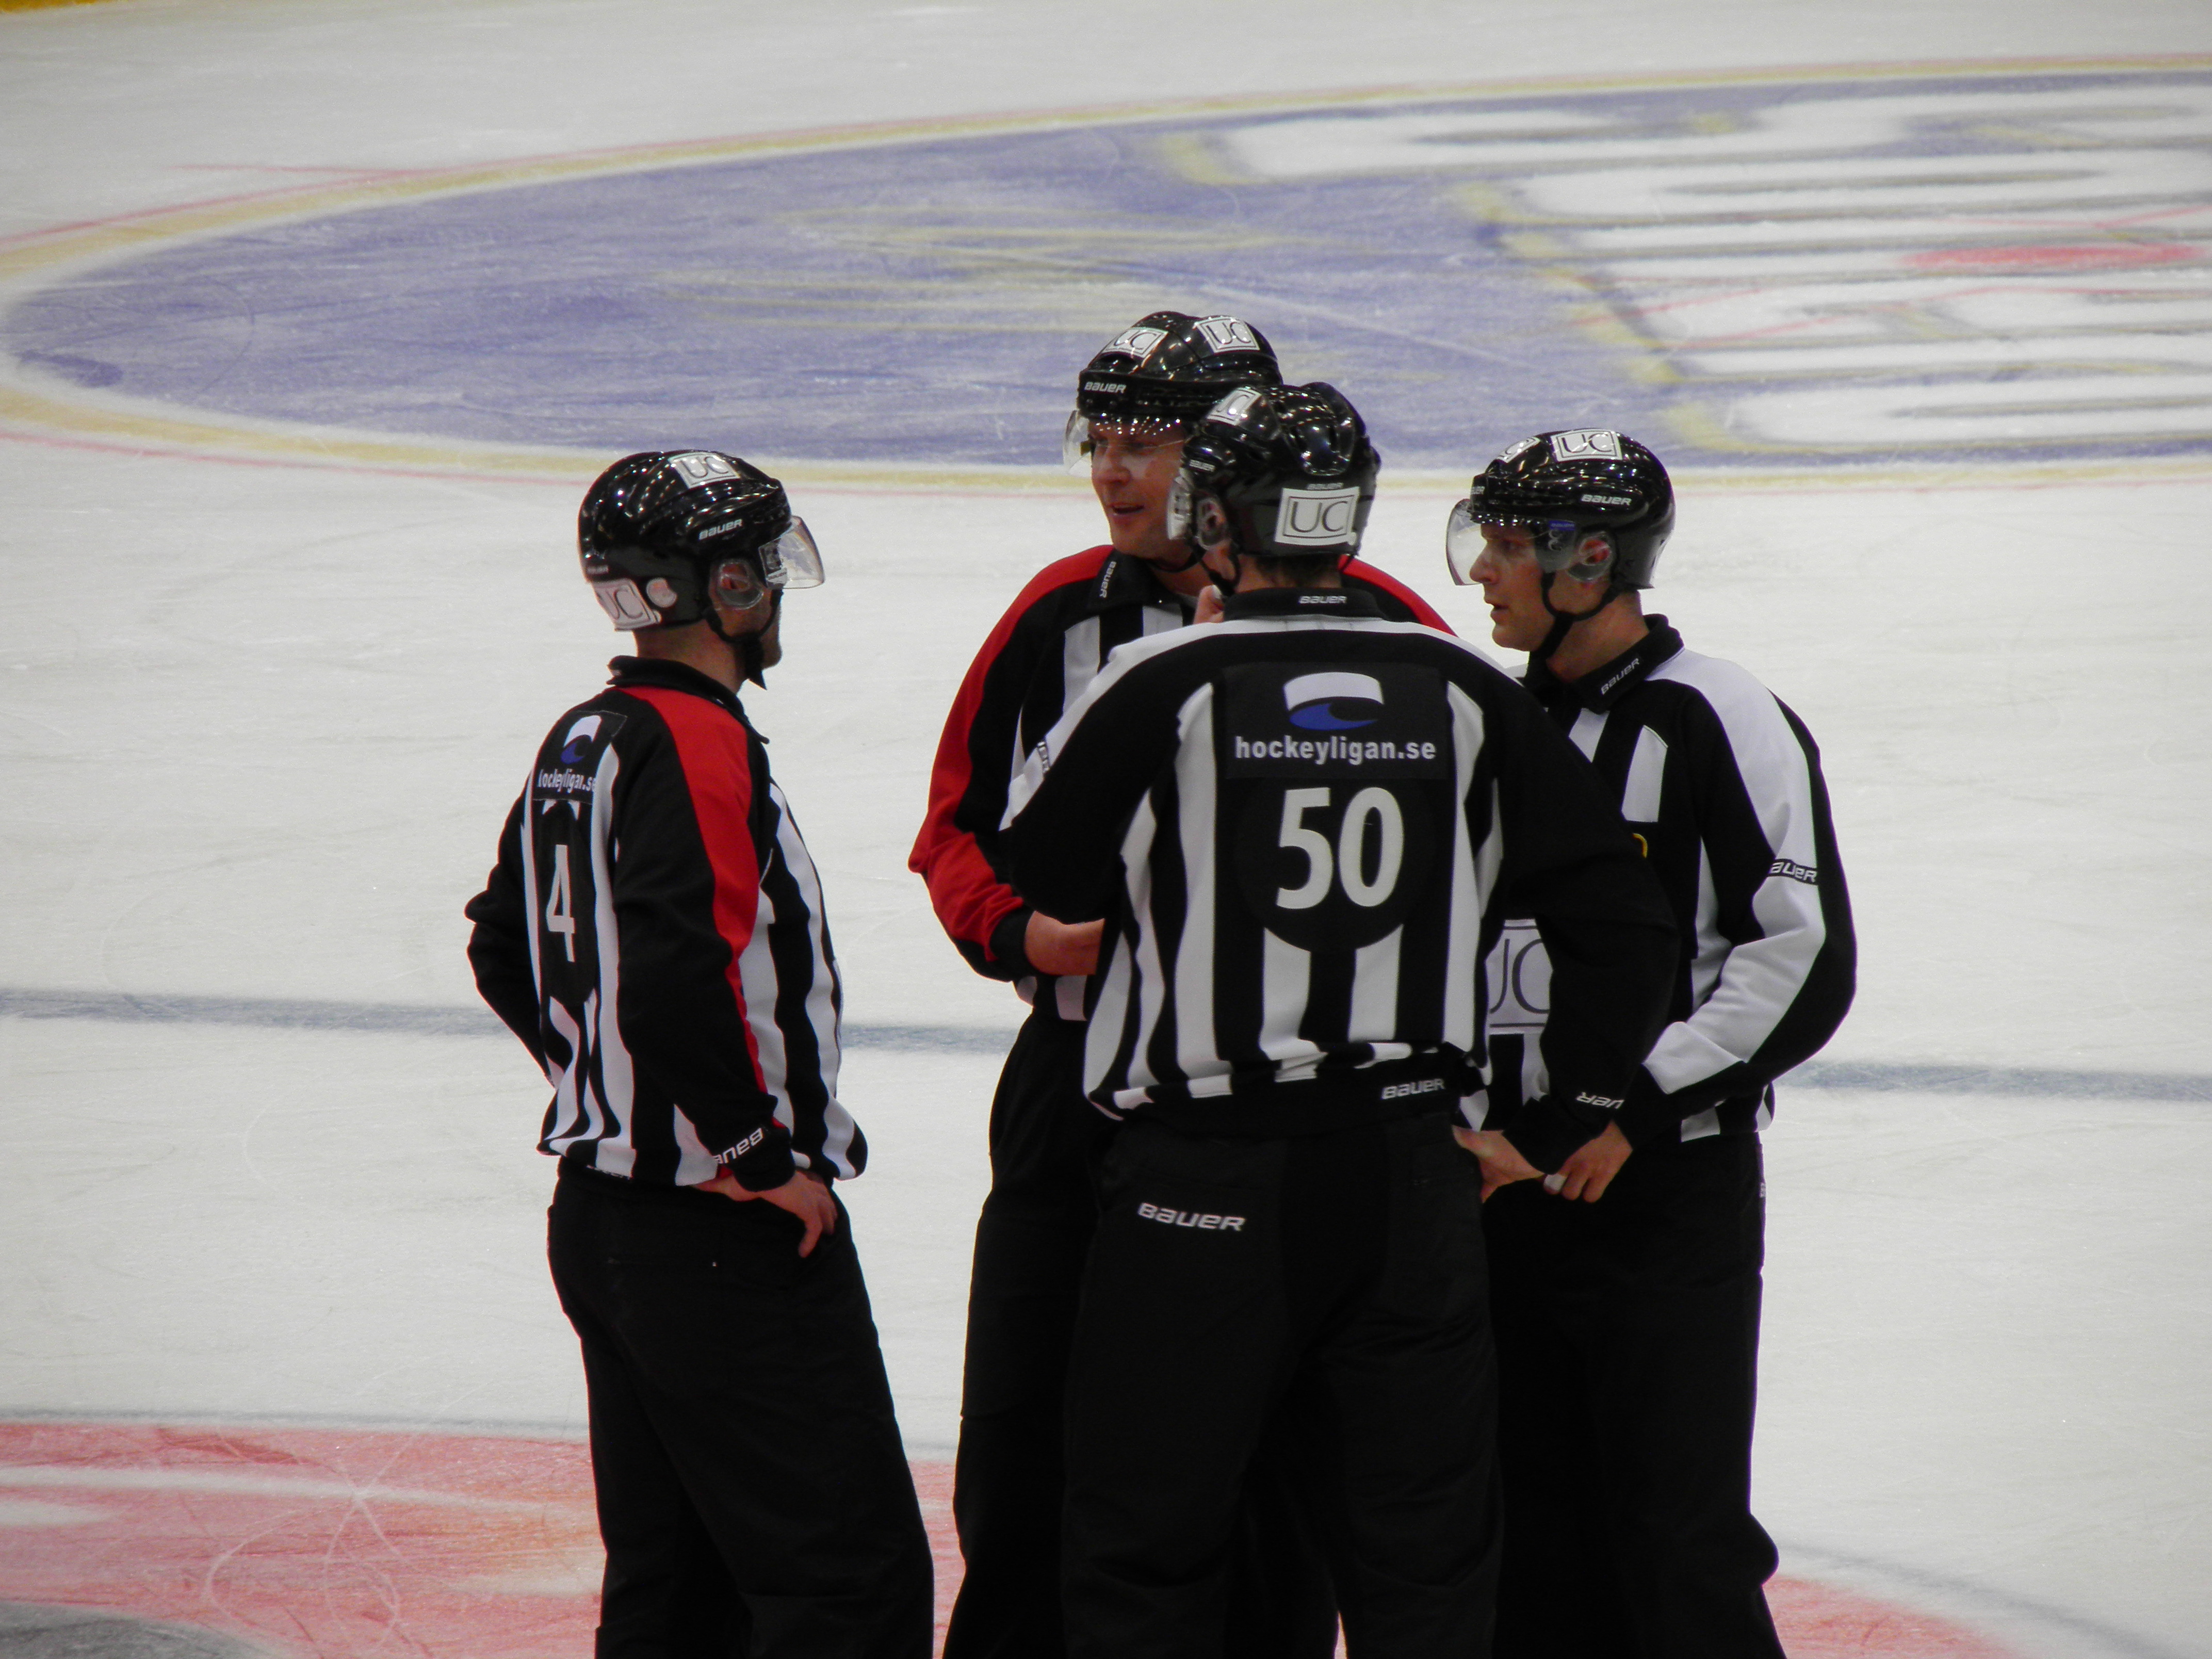 Domarna måste samarbeta bättre på isen - och inte tiga efter matcherna! Foto:Marie Angle/fbkbloggen